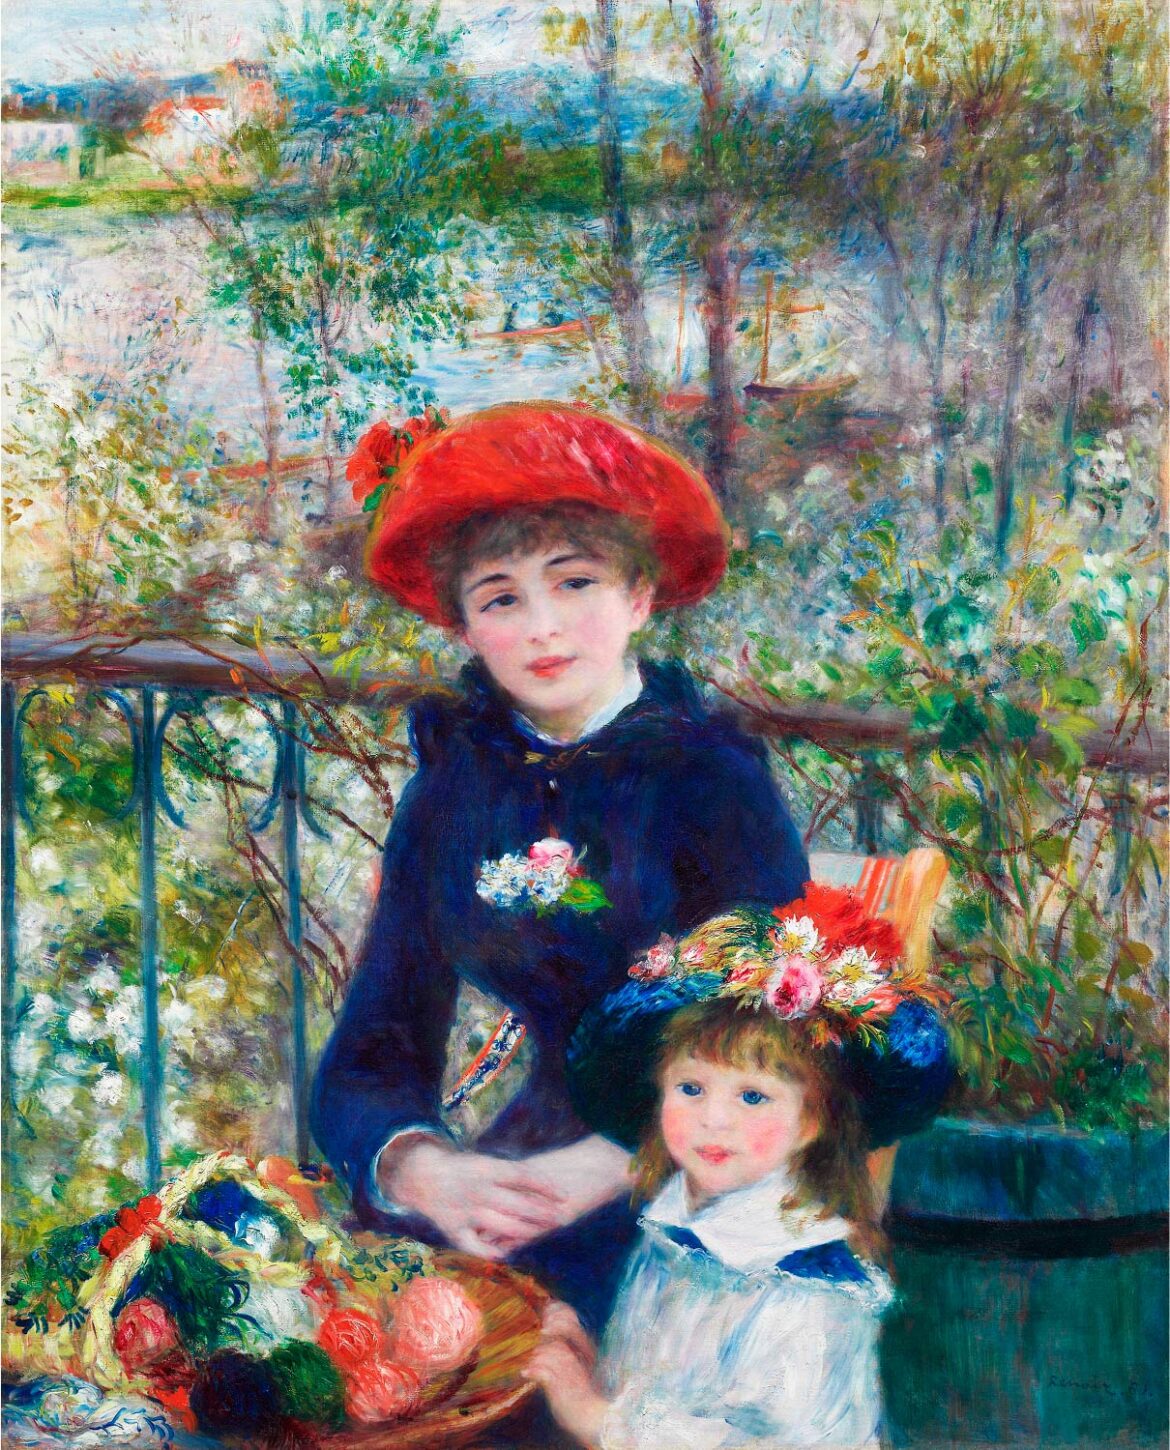 【無料壁紙】ピエール＝オーギュスト・ルノワール「二人の姉妹-テラスにて (1881)」 / Pierre Auguste Renoir_Two Sisters (On the Terrace) (1881)